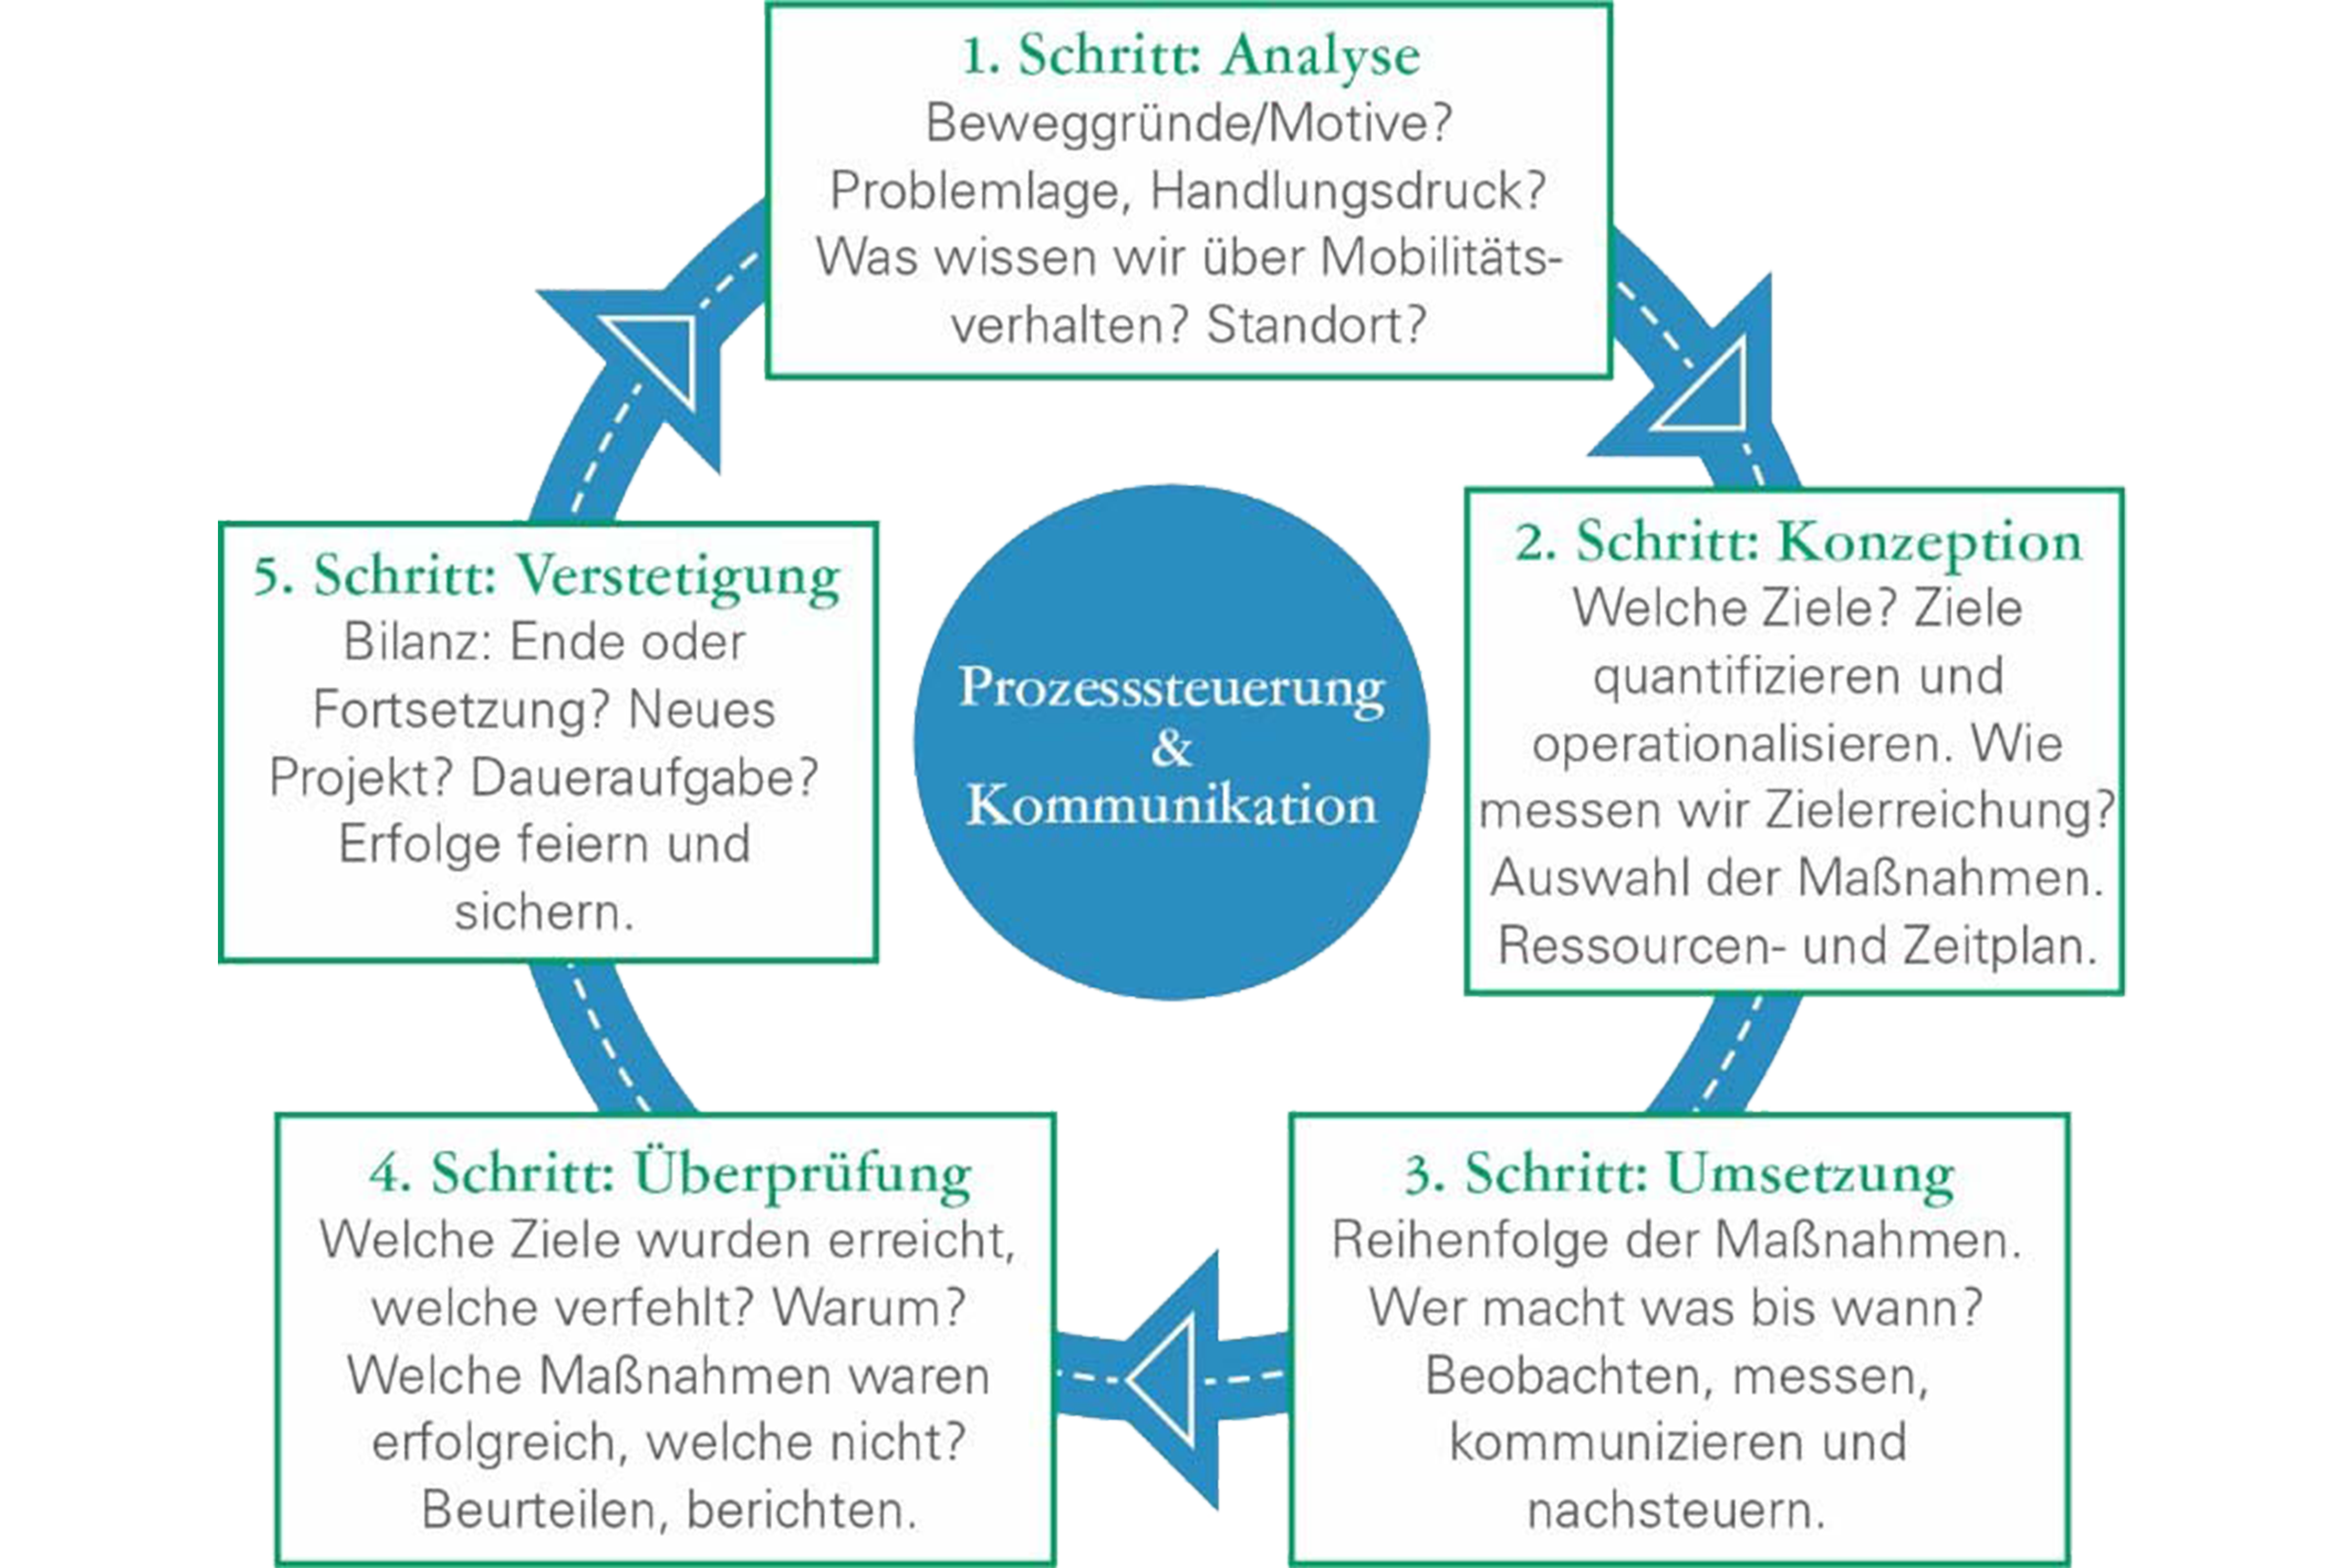 Kreislauf von Mobilitätsmanagement "Prozesssteuerung und Kommunikation": 1. Analyse, 2. Konzeption, 3. Umsetzung, 4. Überprüfung, 5. Verstetigung